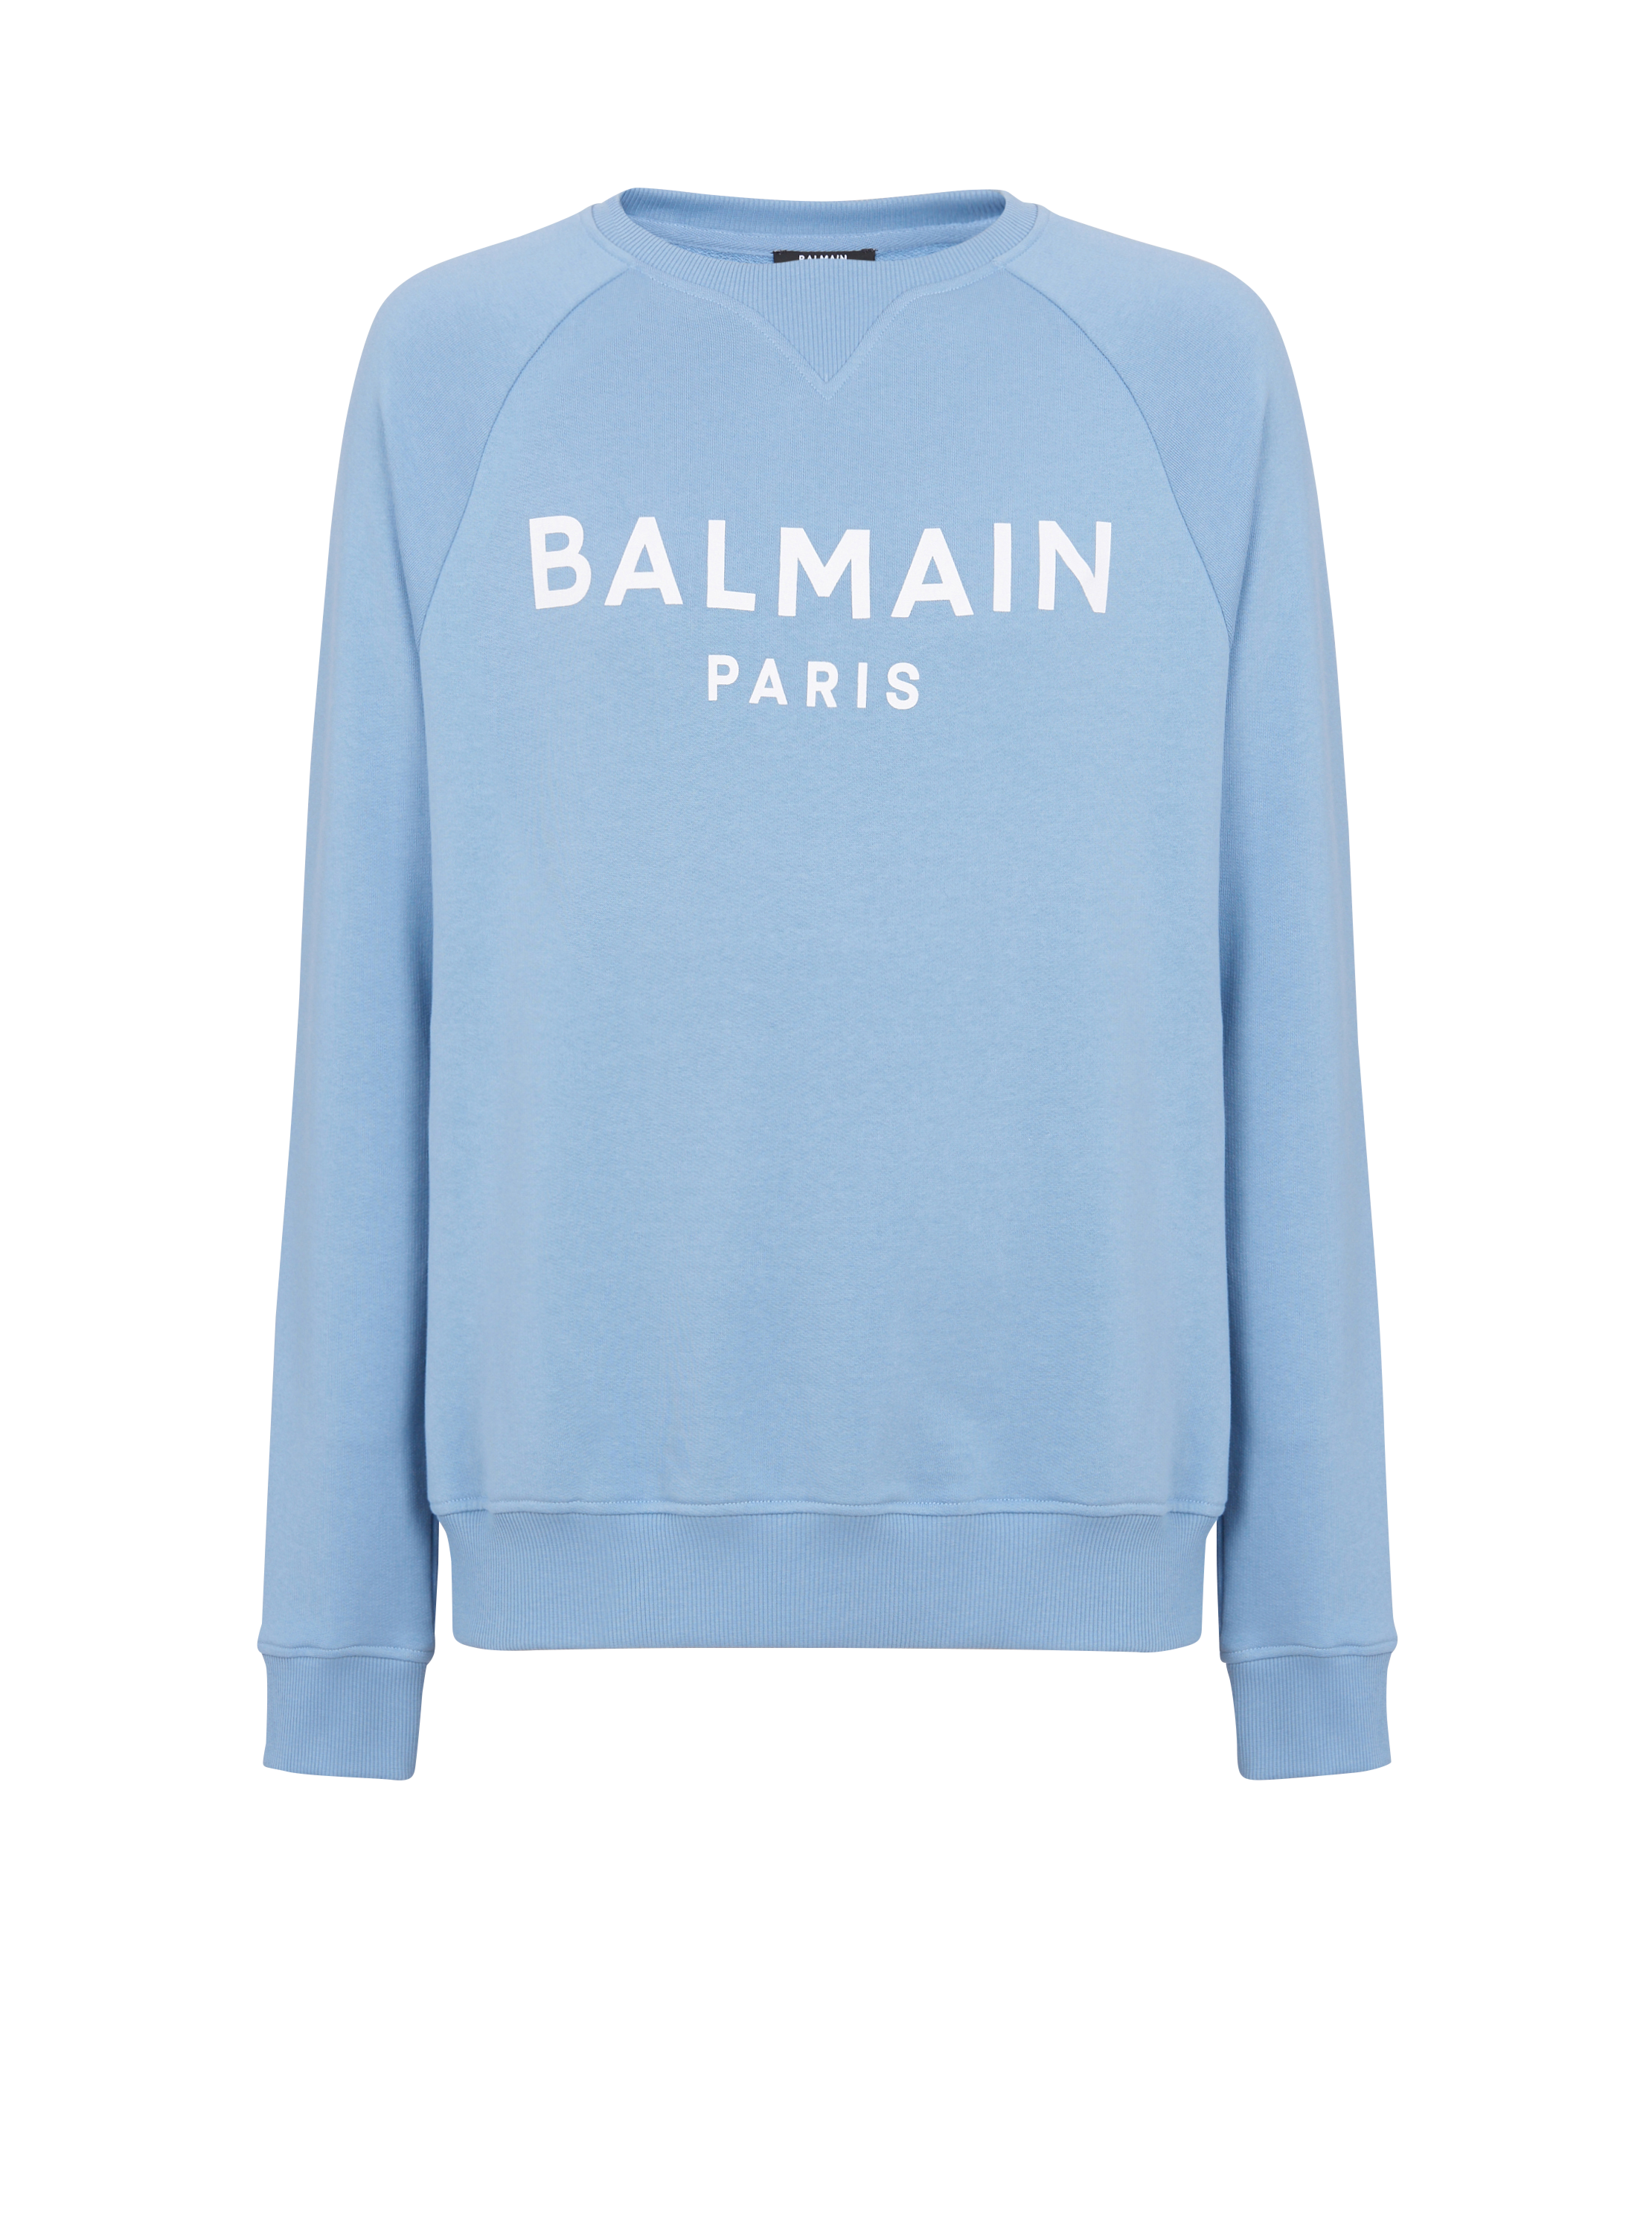 Sweat-shirt Balmain Paris, bleu, hi-res